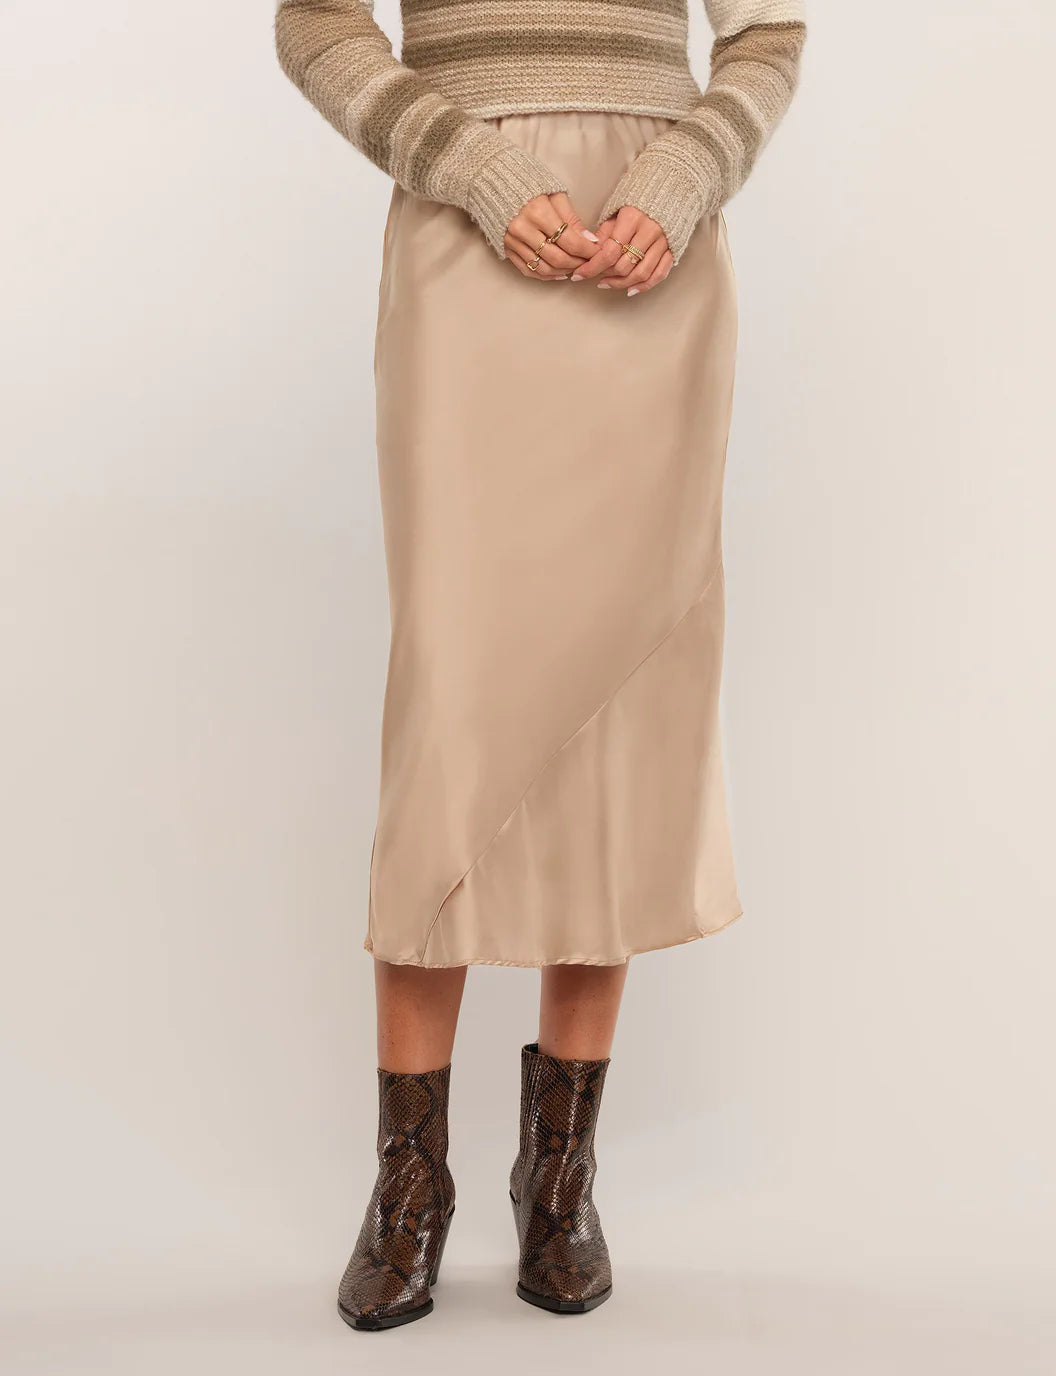 FINAL SALE- Sheridan Skirt